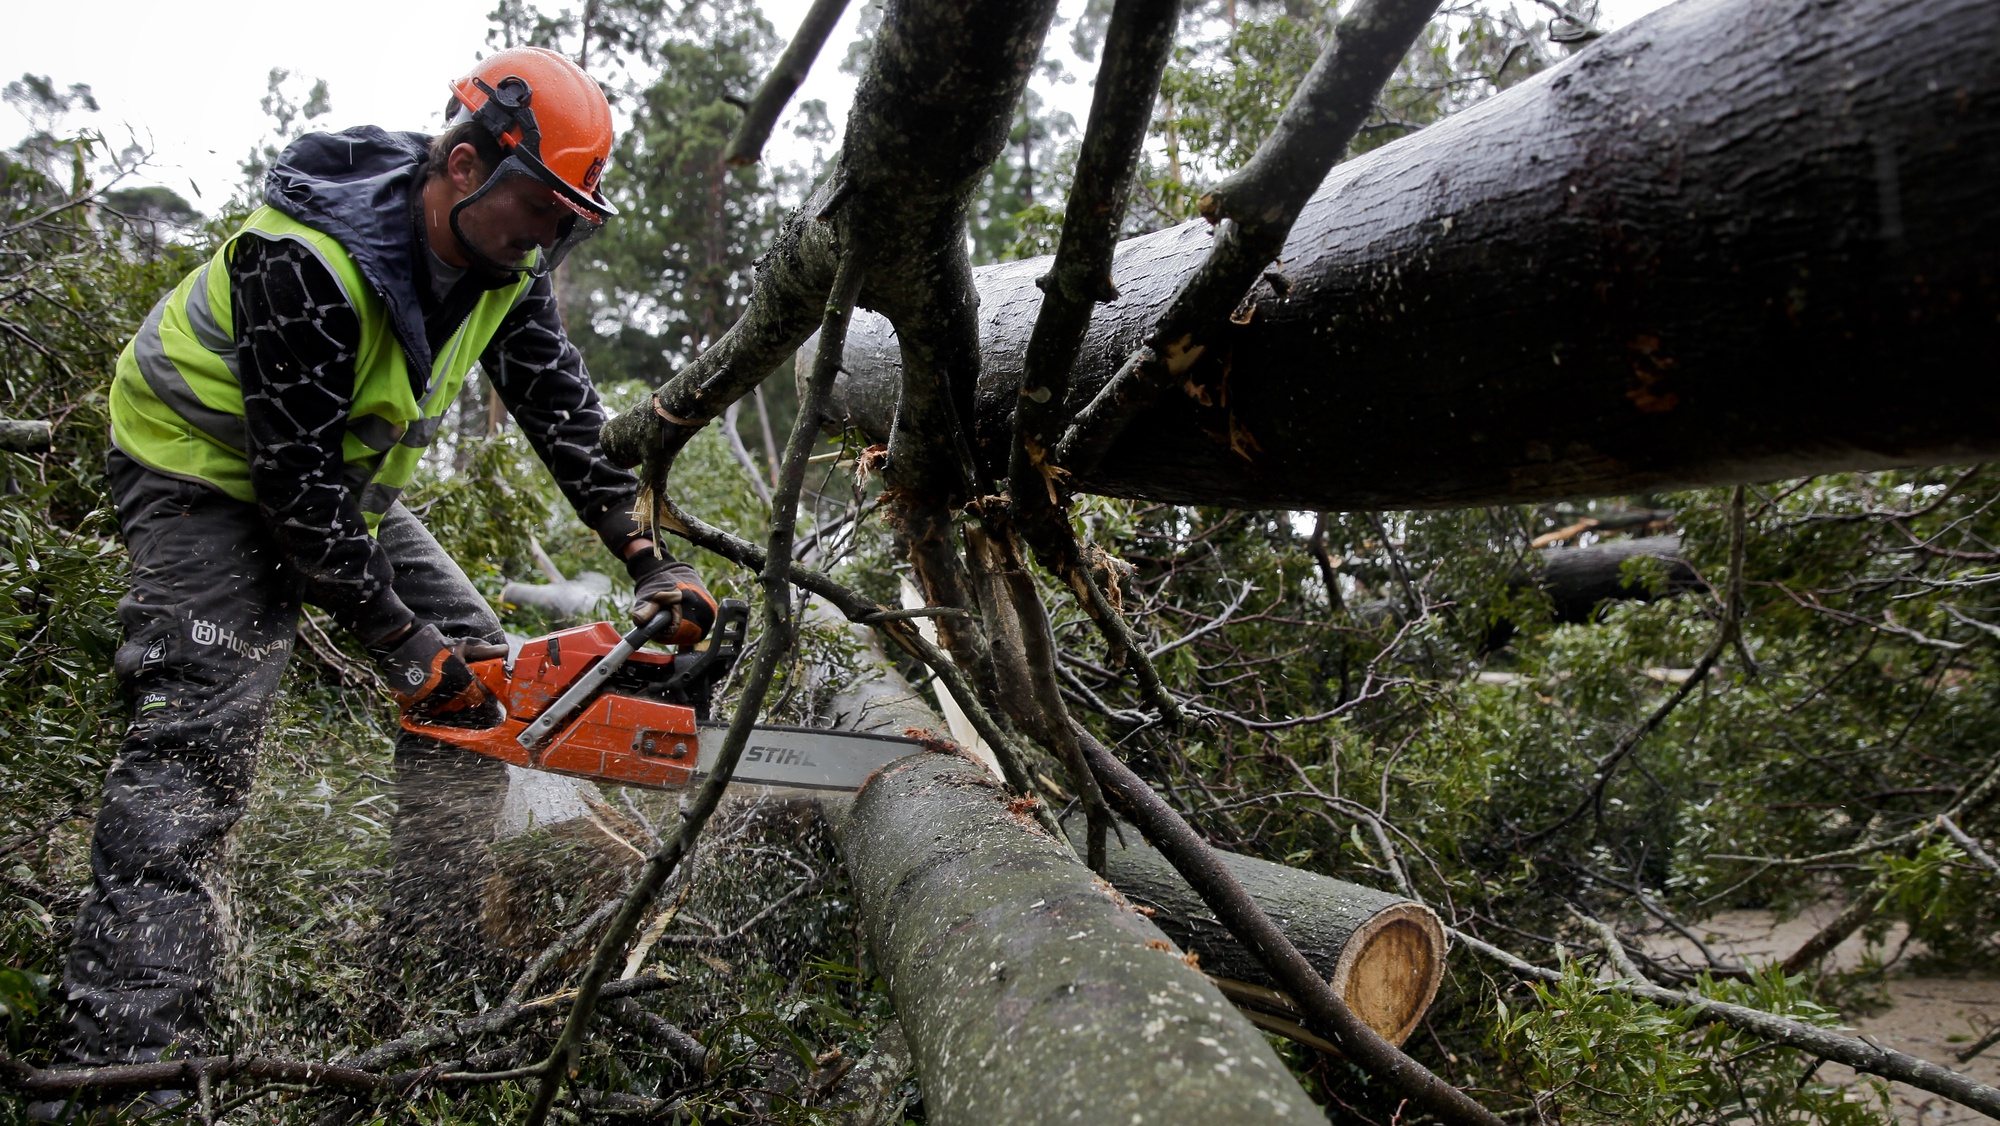 Um funcionário da Câmara de Sintra remove um tronco de uma árvore derrubada pelo vento durante o fim-de-semana, causando prejuízos em todo o património cultural e natural que constitui a Serra de Sintra, 21 de janeiro de 2013. ANDRÉ KOSTERS/ LUSA